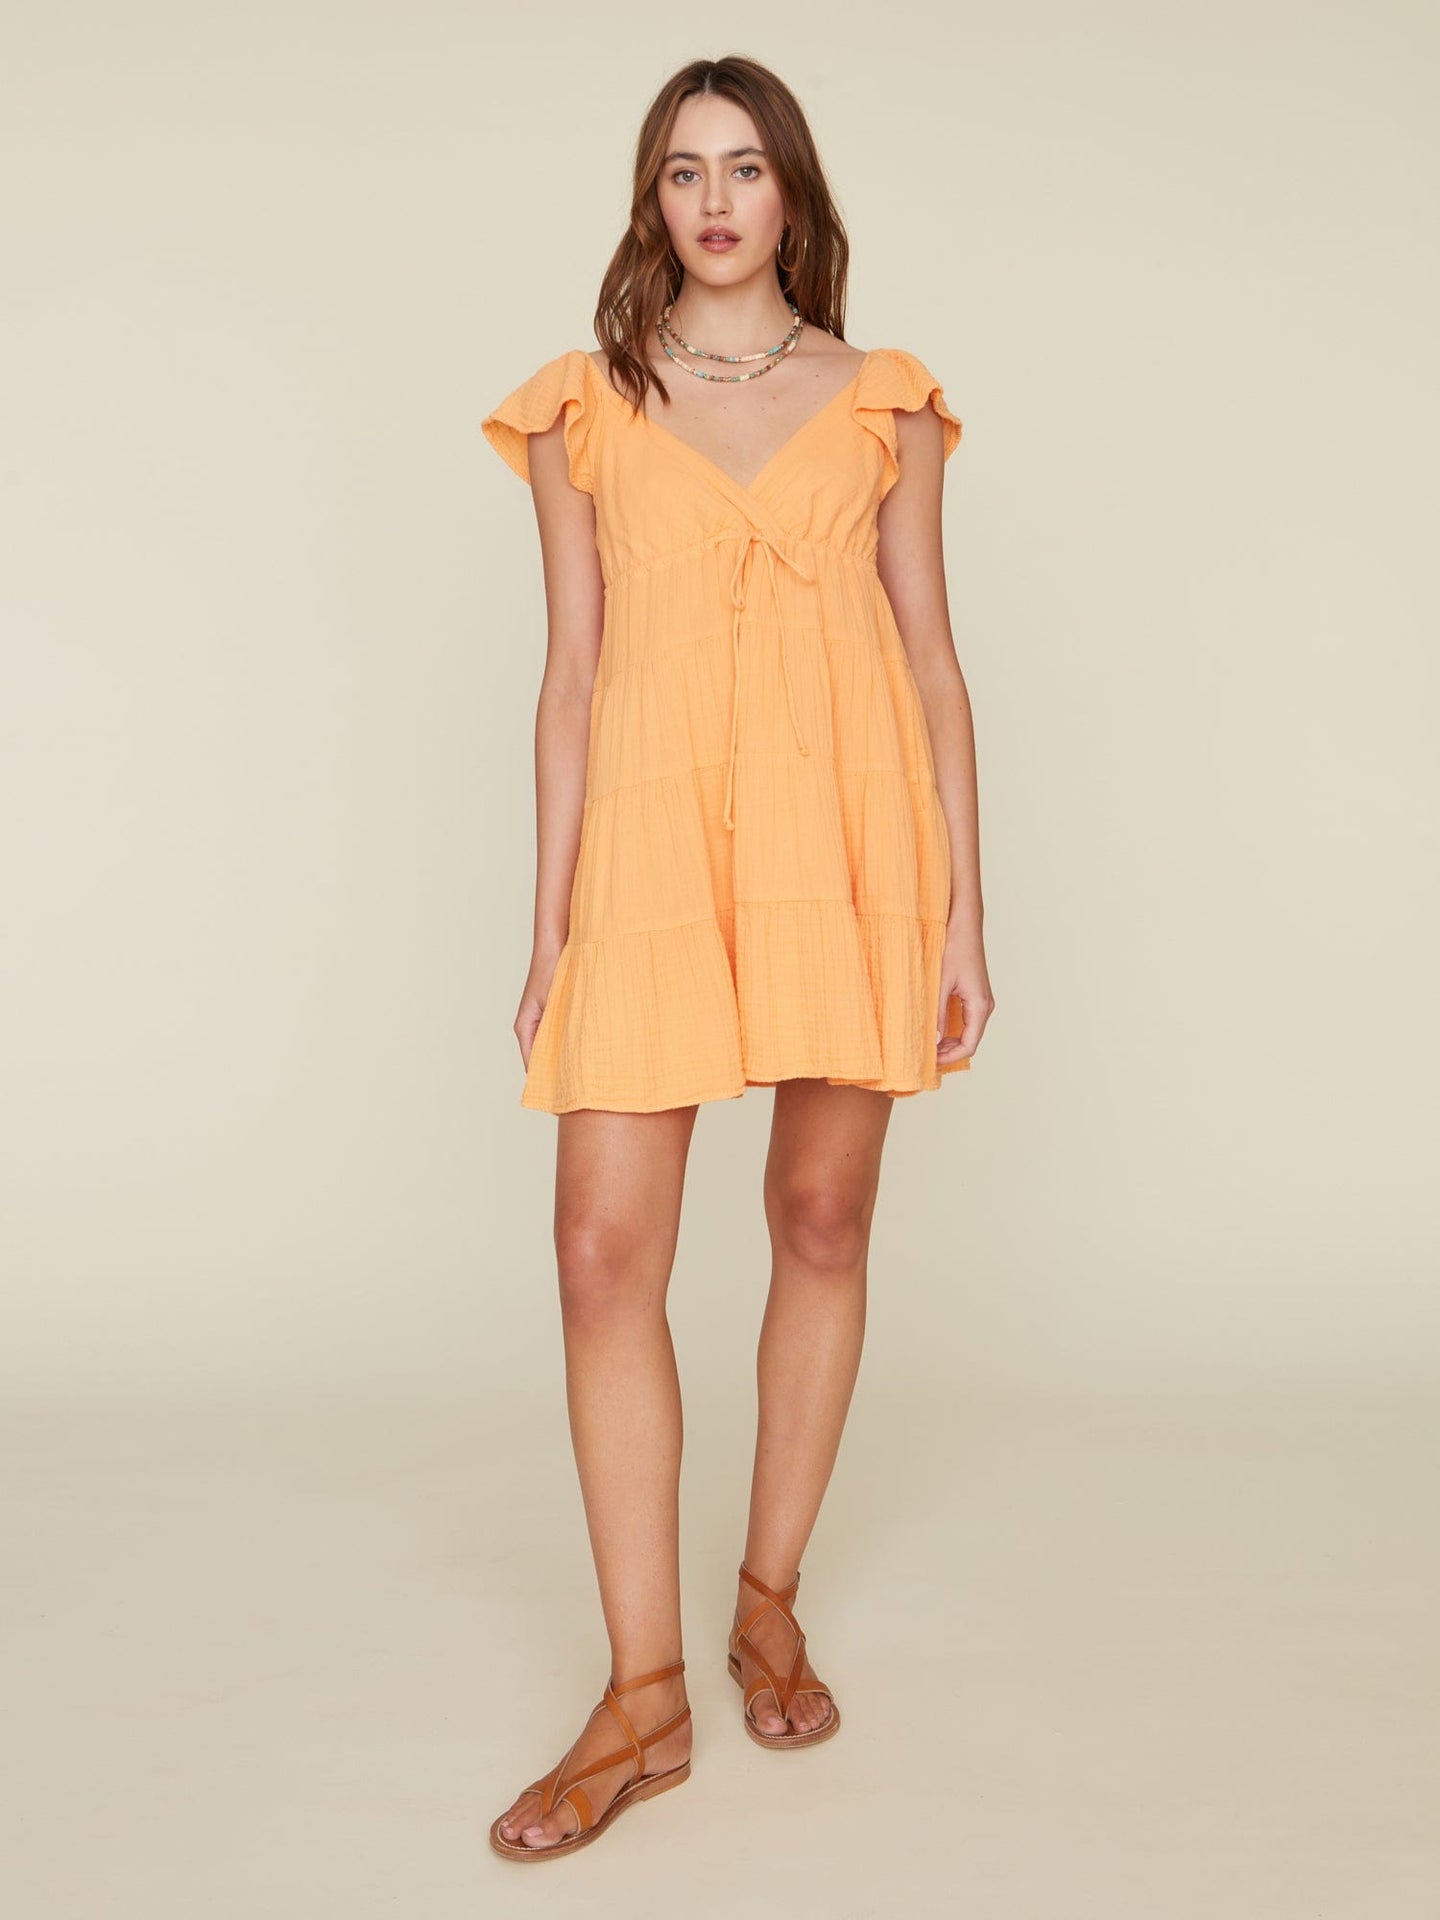 Xirena Dress Apricot Sonnet Dress